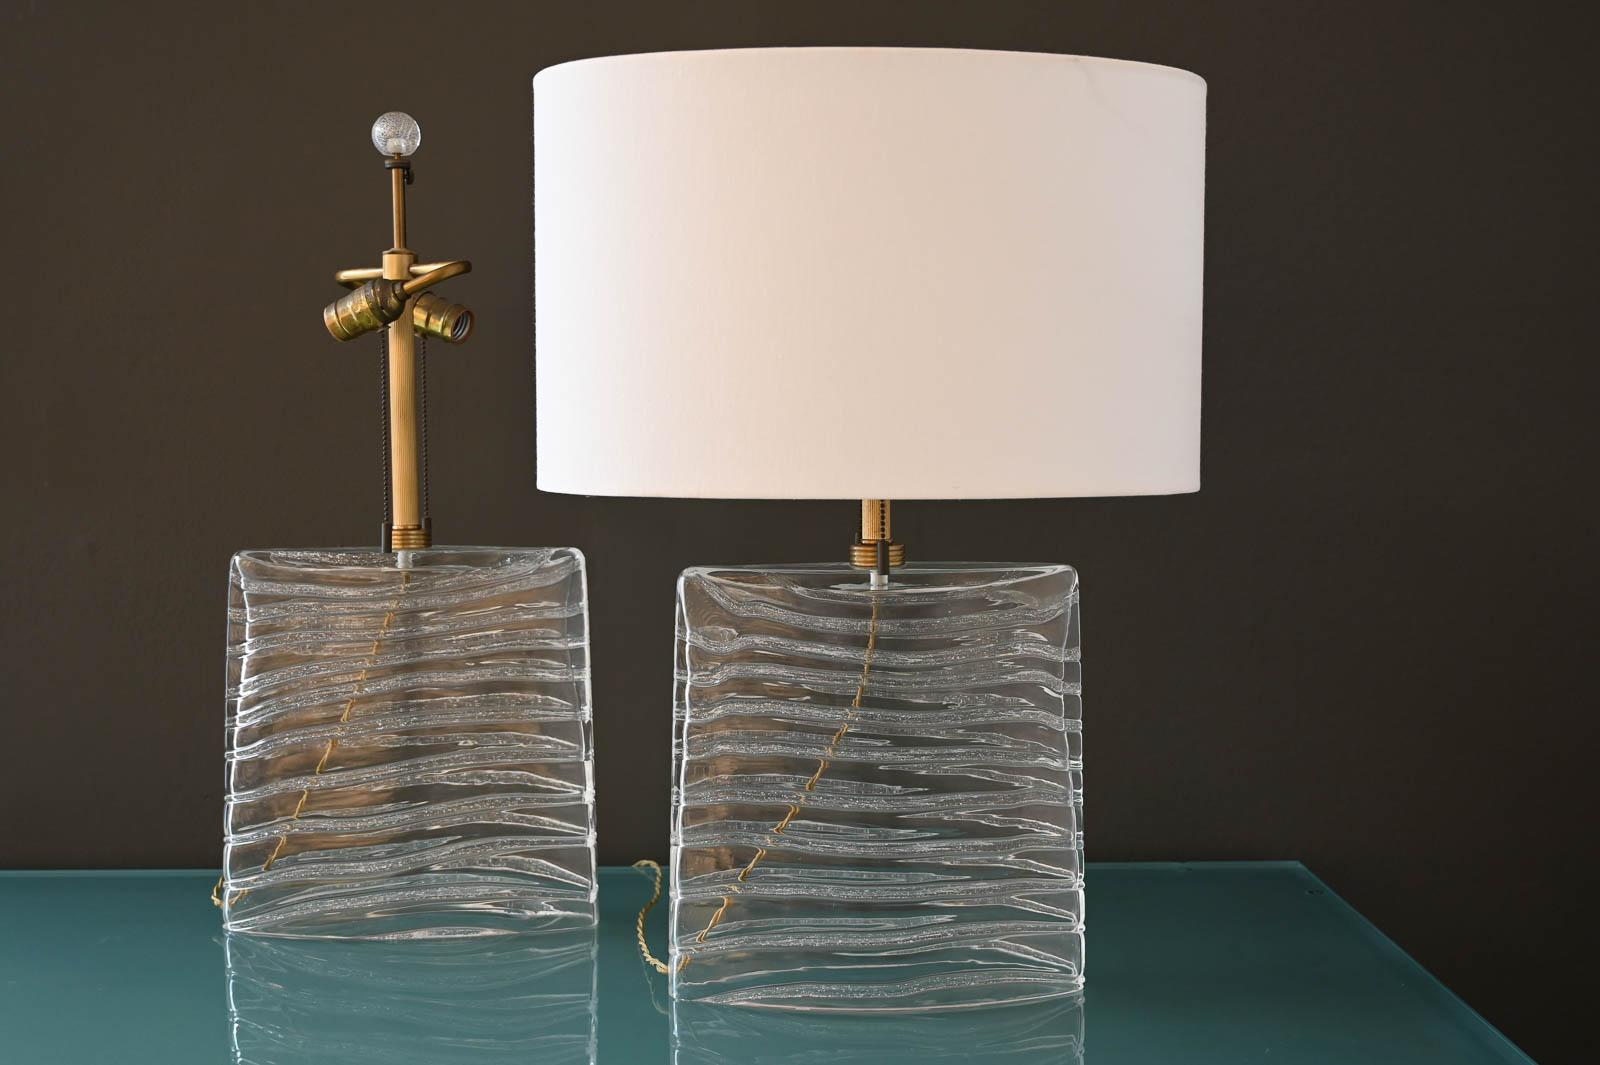 John Hutton für Donghia Murano-Glas-Lampen aus Klarglas und Messing.  Auf dem Sockel signiert, strahlen diese schönen Lampen ein sanftes Licht aus und sind perfekt für Nachttische oder Kredenzen.  Ovale Schirme sind NICHT im Lieferumfang enthalten,